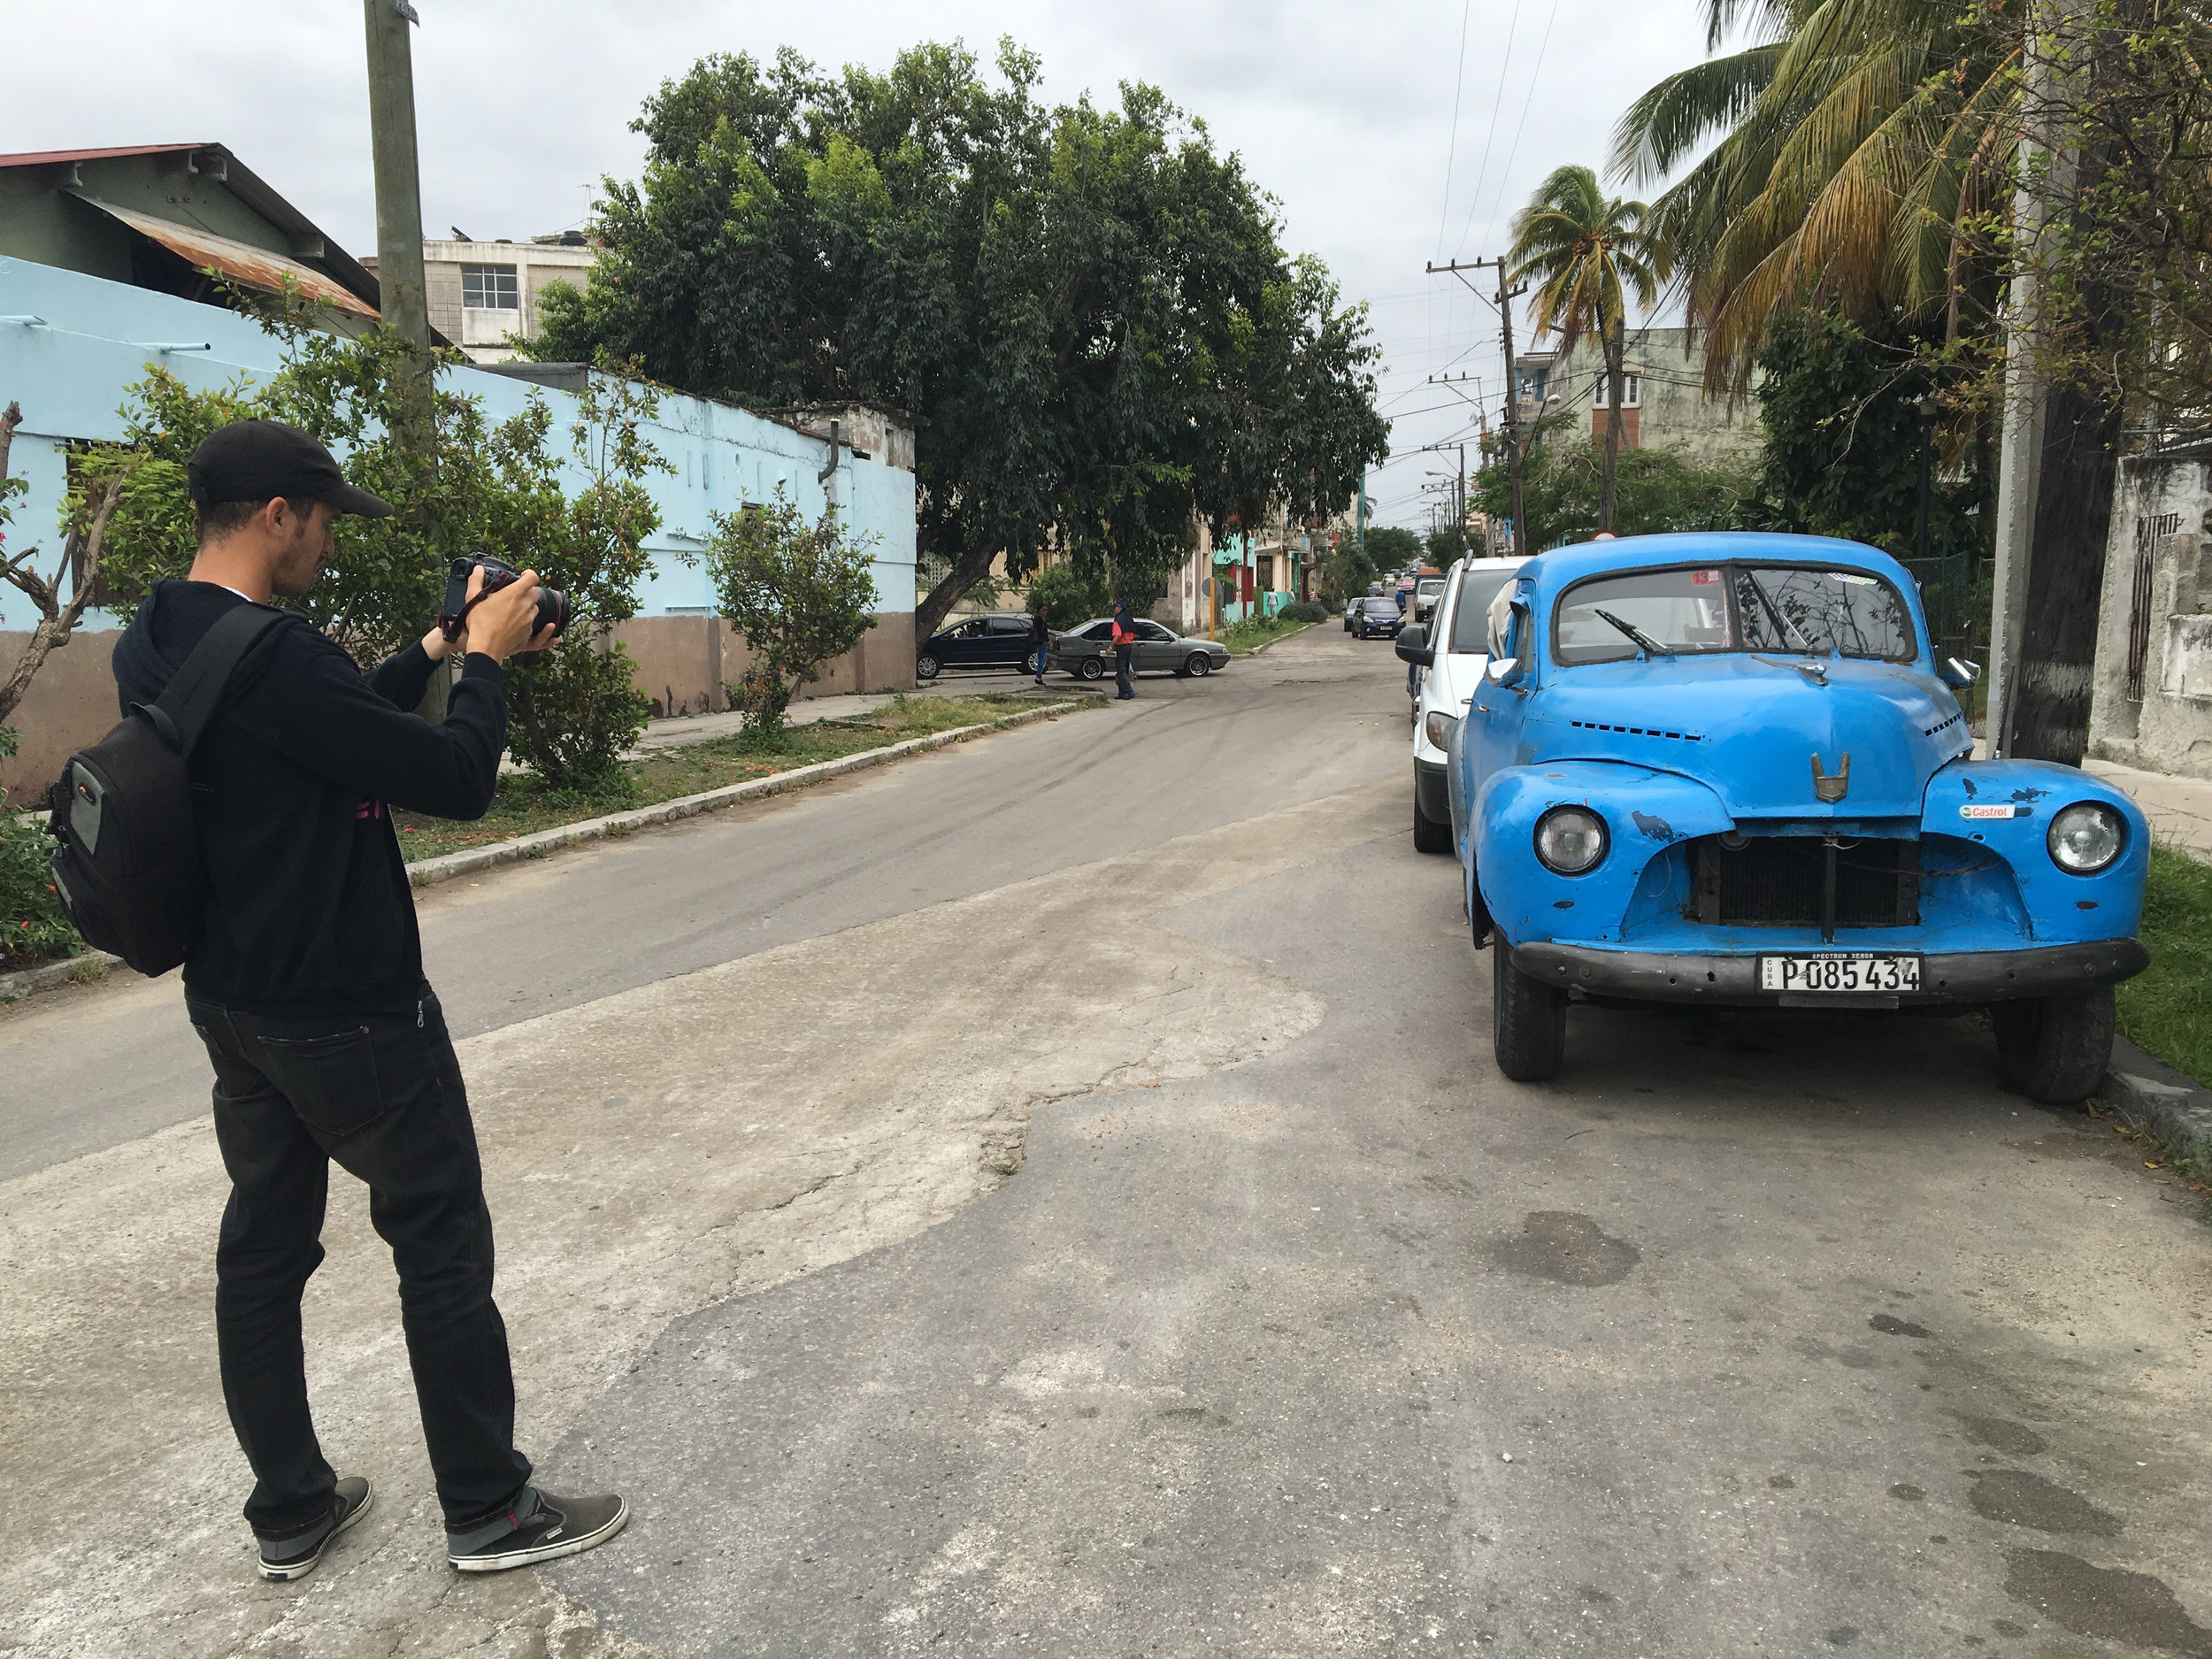  CUBA- One of the camera operators took a picture of an almendron, an old American car, on a street in Cuba. 

Uno de los operadores de cámara tomó una foto de un almendrón, un vcoche viejo americano, en una calle de Cuba.
(Photo Credit: National Geo